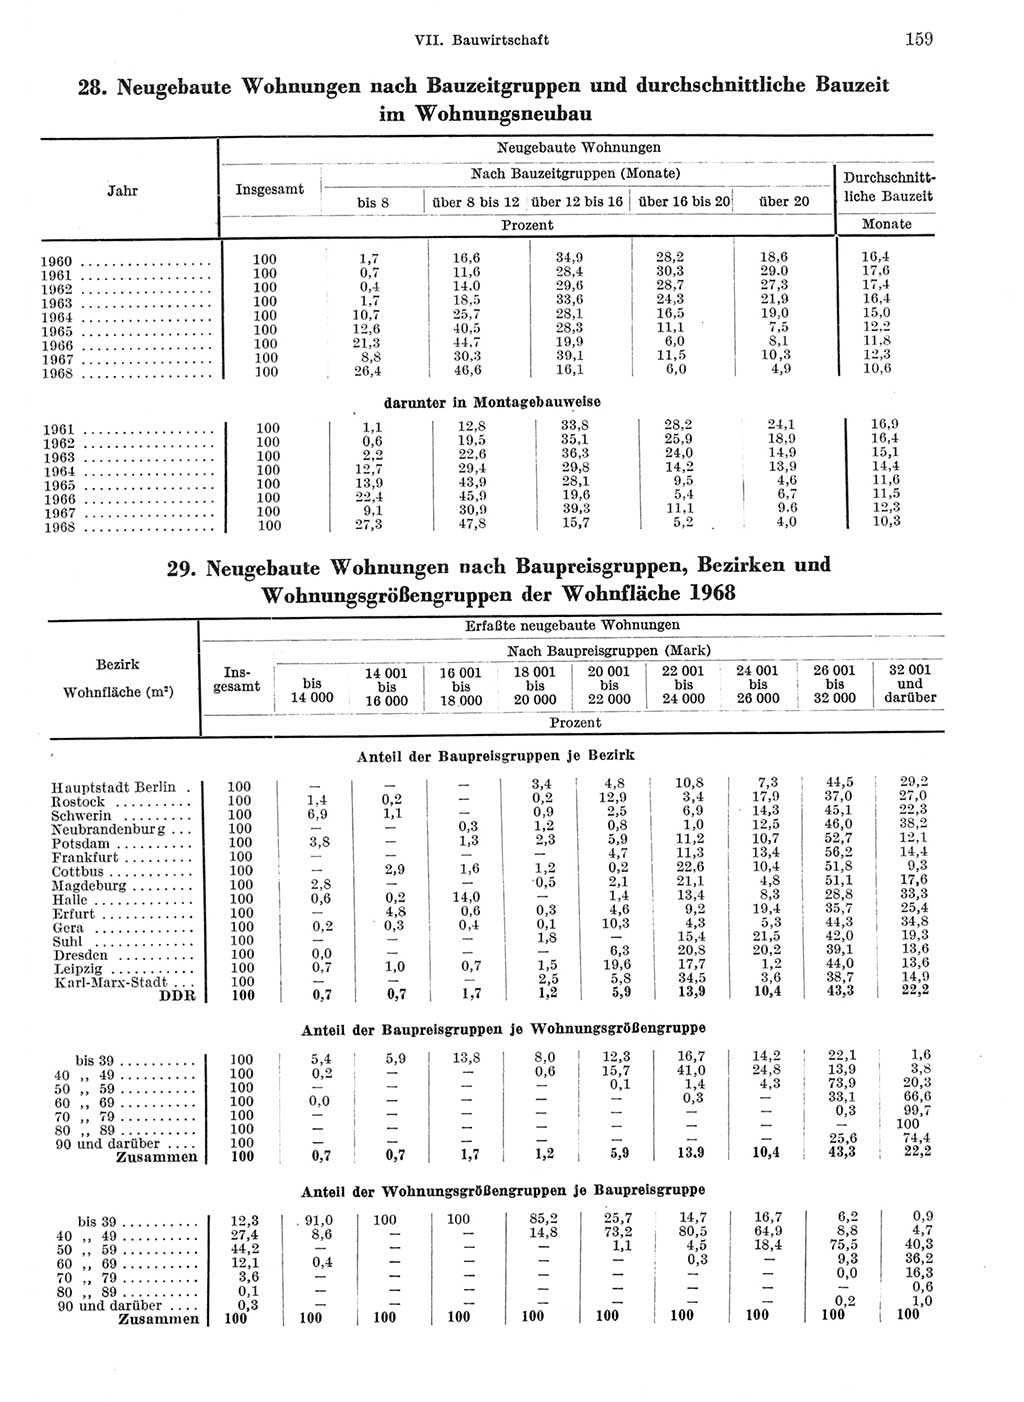 Statistisches Jahrbuch der Deutschen Demokratischen Republik (DDR) 1969, Seite 159 (Stat. Jb. DDR 1969, S. 159)